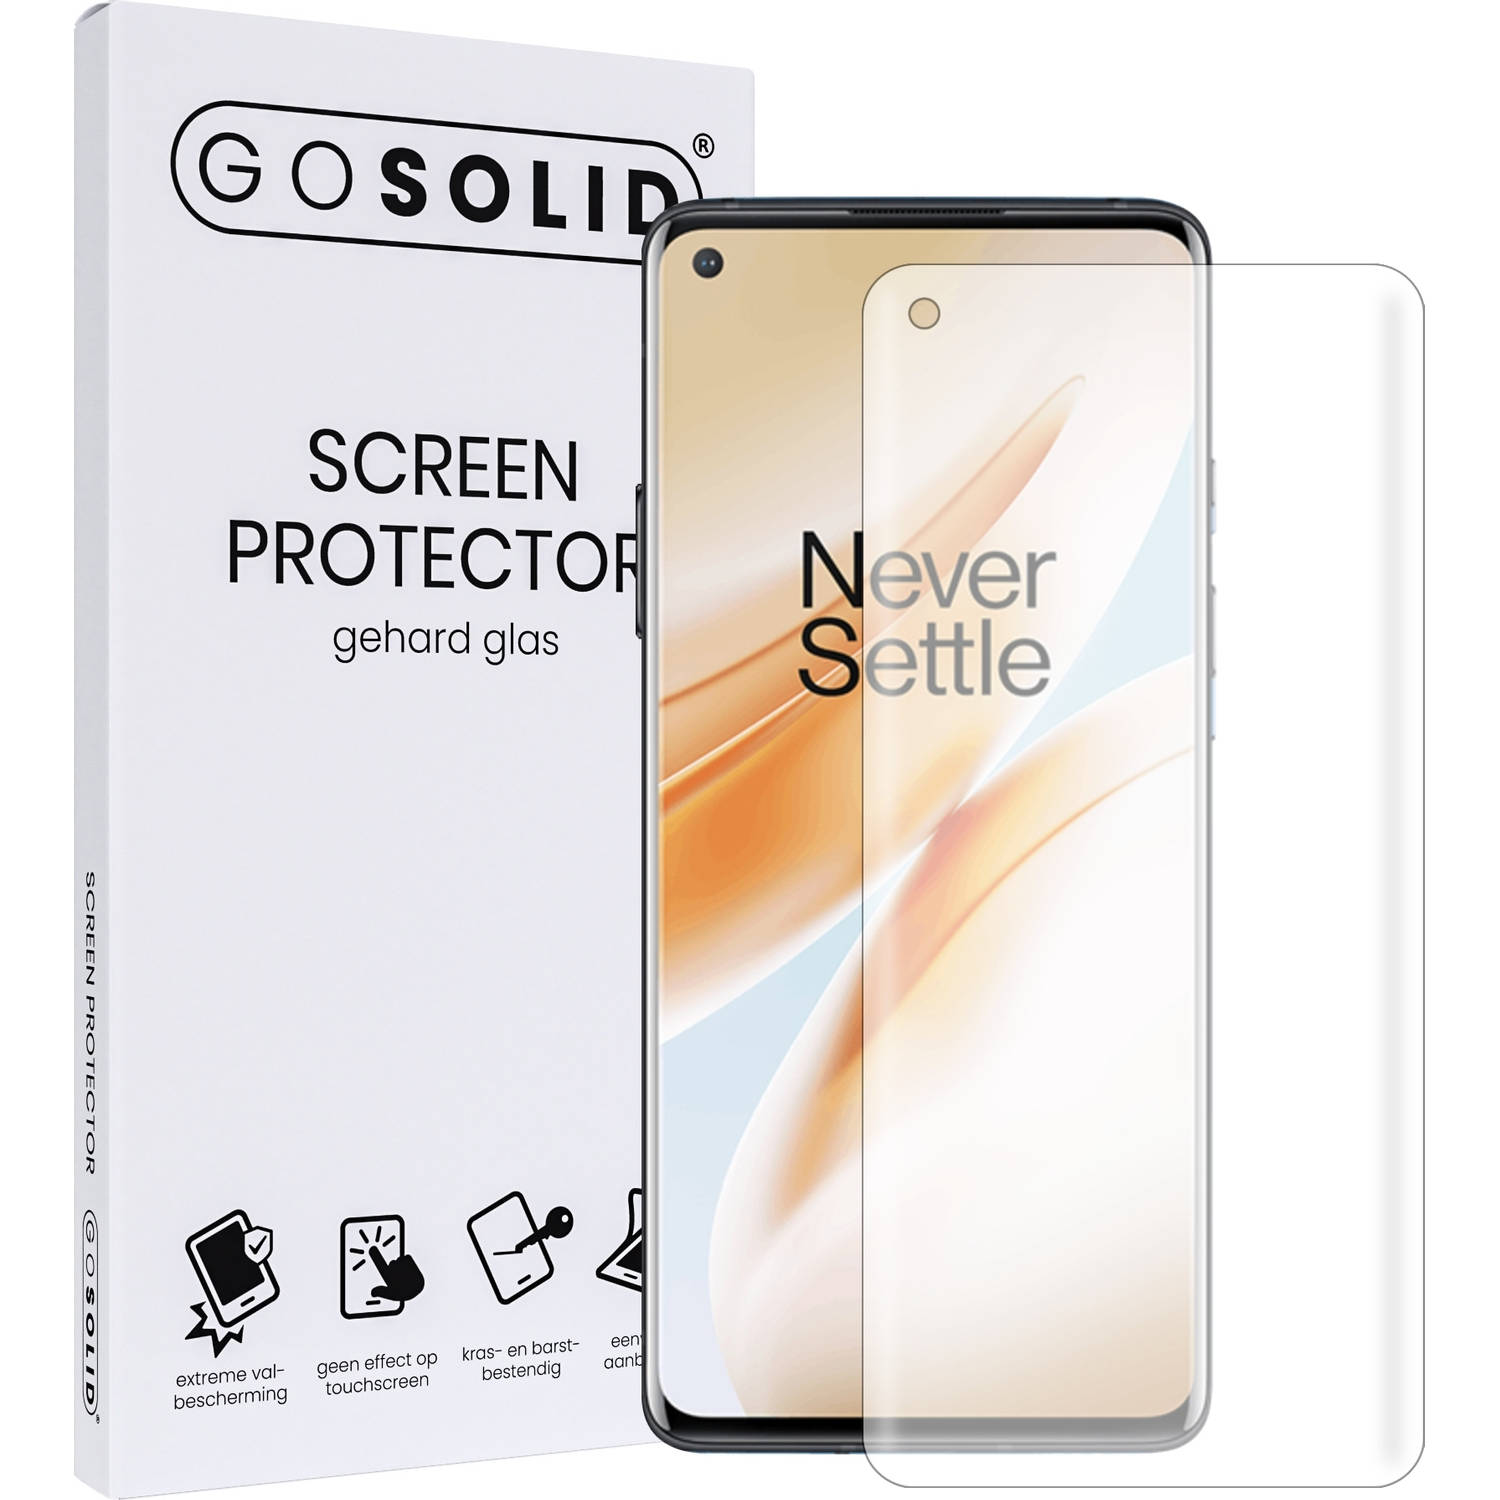 GO SOLID! Screenprotector voor OnePlus 8 5G